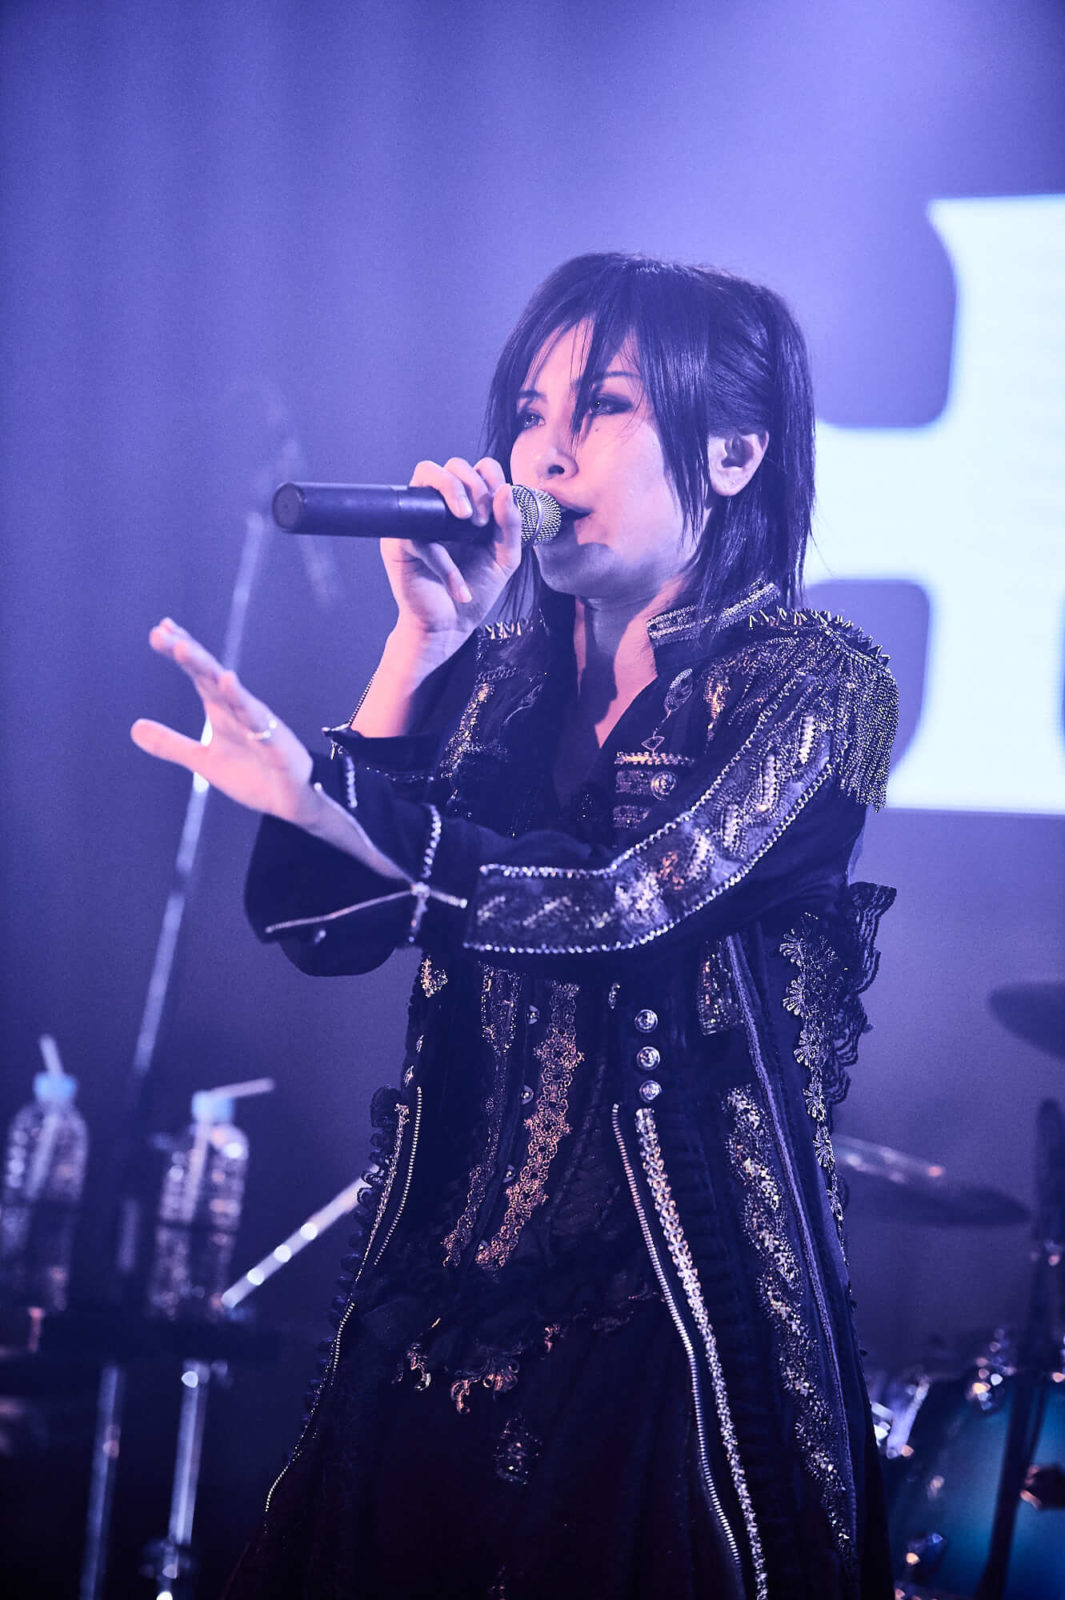 イケメン女子モデル・AKIRAとロックヴァイオリニスト・Ayasaの異色ロックユニット『＋A（プラスエー）』がお披露目ライブでファンを魅了